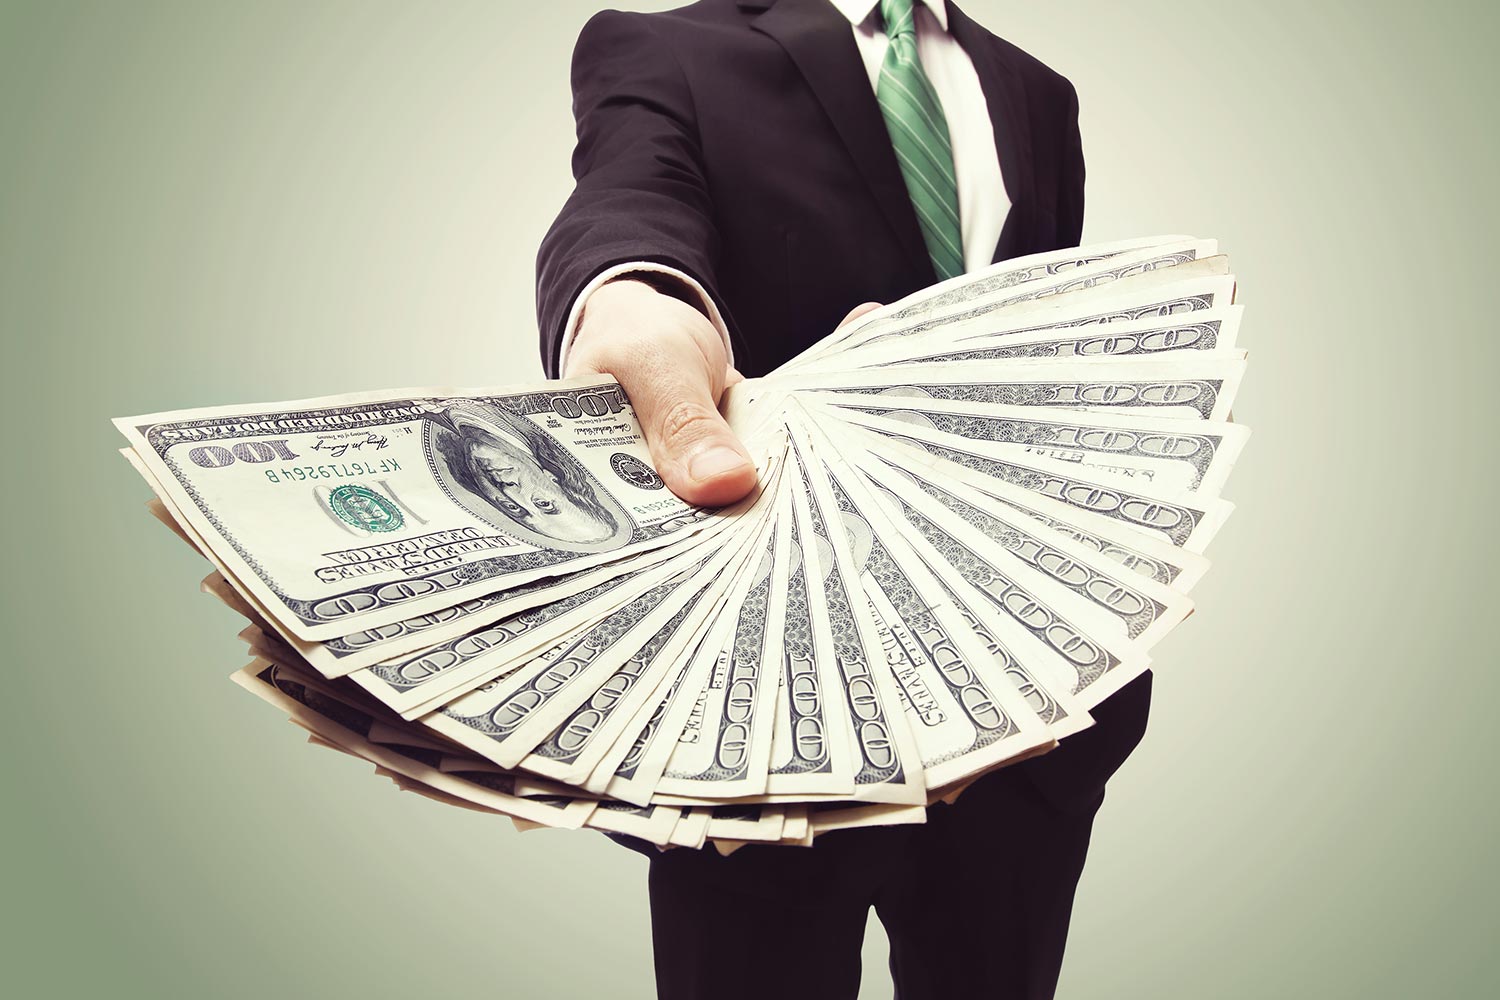 High Pay for Nonprofit Execs? Analysis of 100,000 Salaries